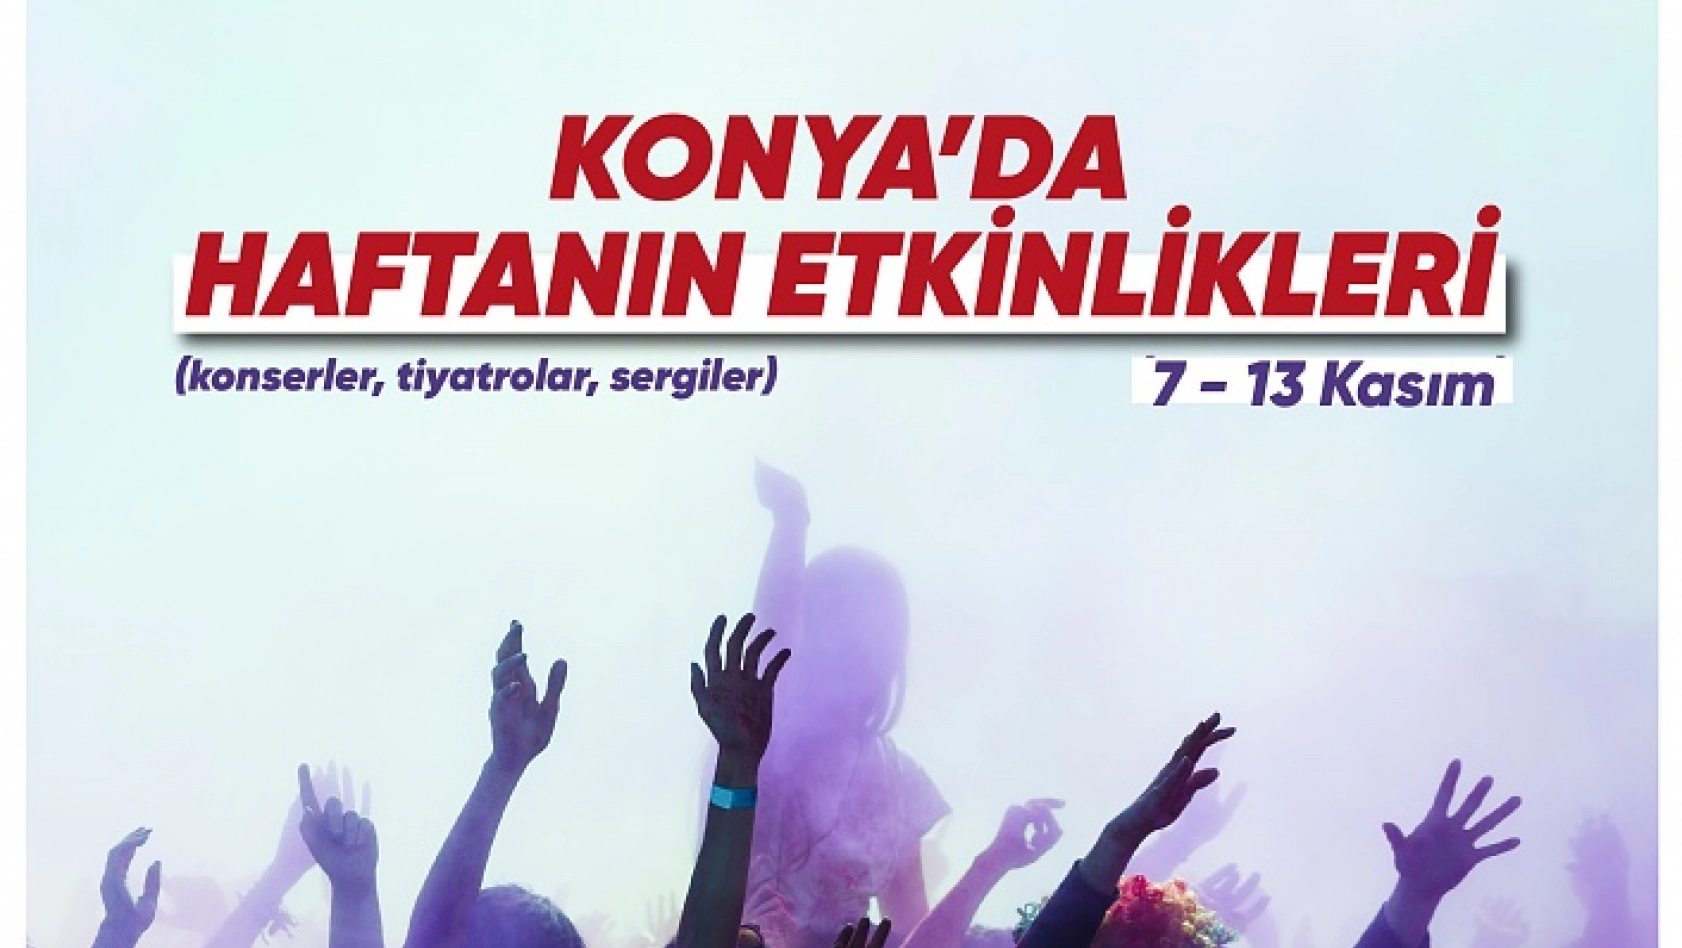 Konya'da haftanın etkinlikleri (7 - 13 Kasım)